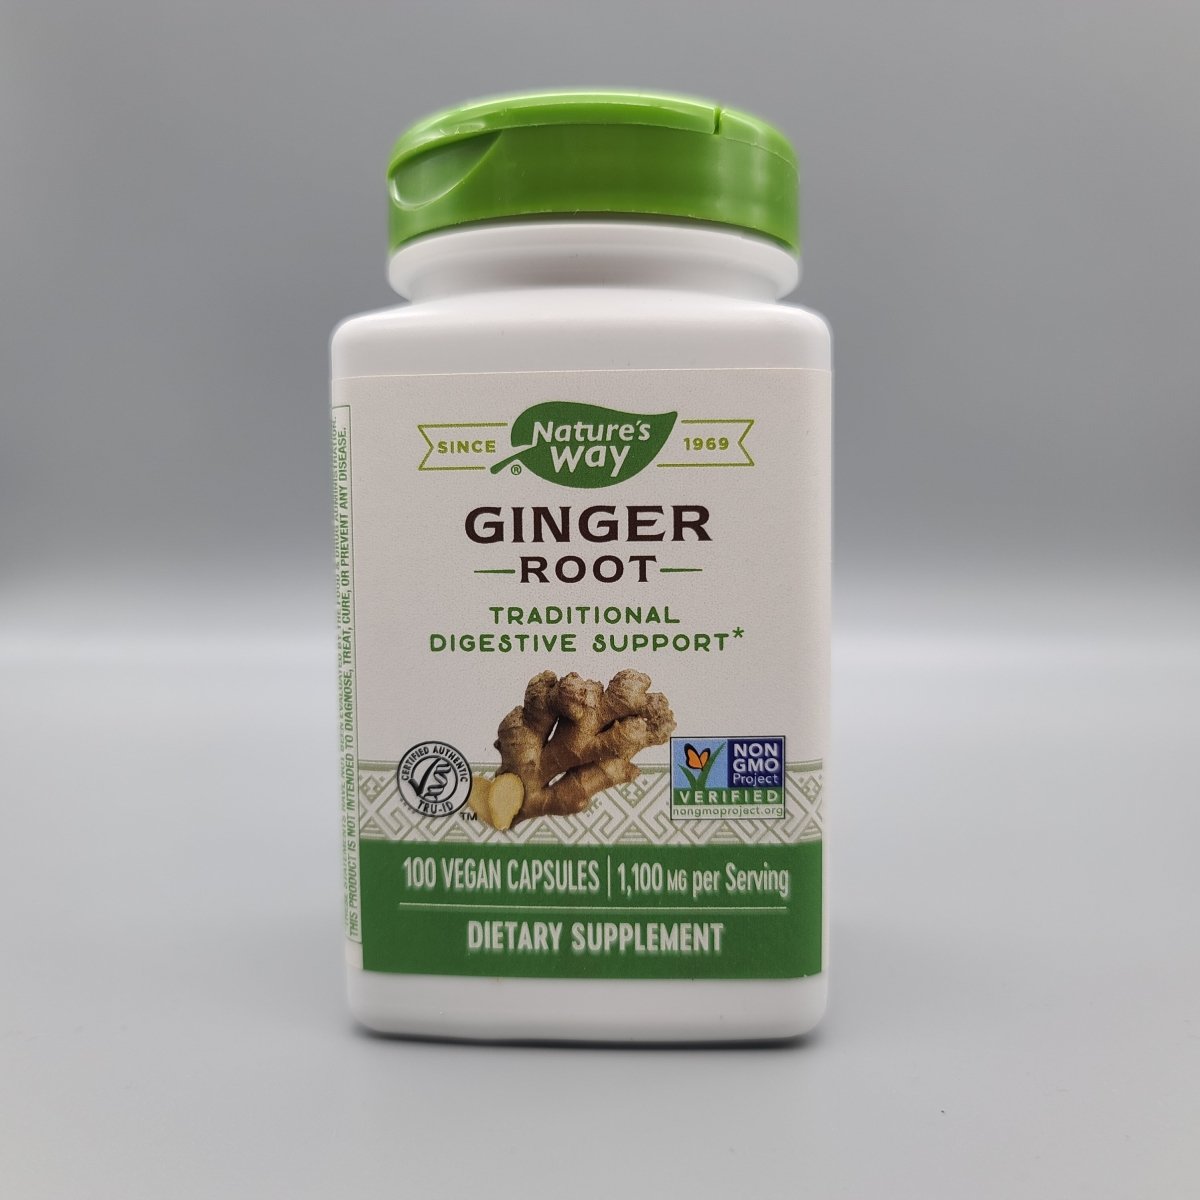 Ginger - Root - 100 Vegan Capsules - 1,100 mg